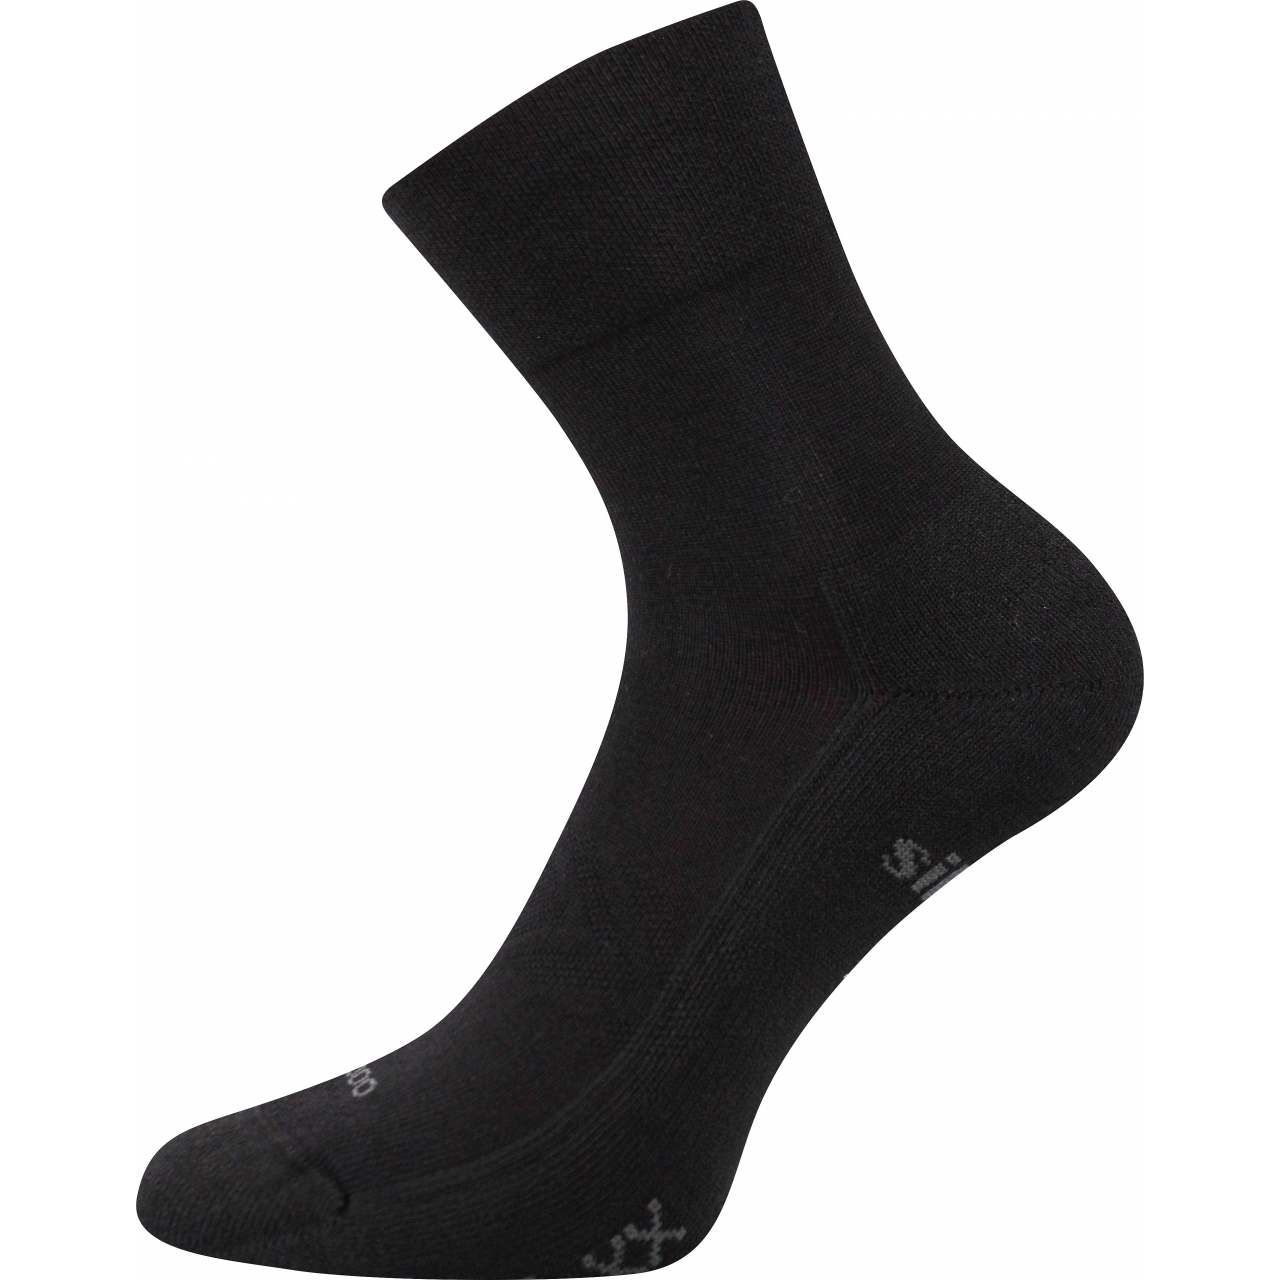 Ponožky sportovní unisex Voxx Esencis - černé, 39-42